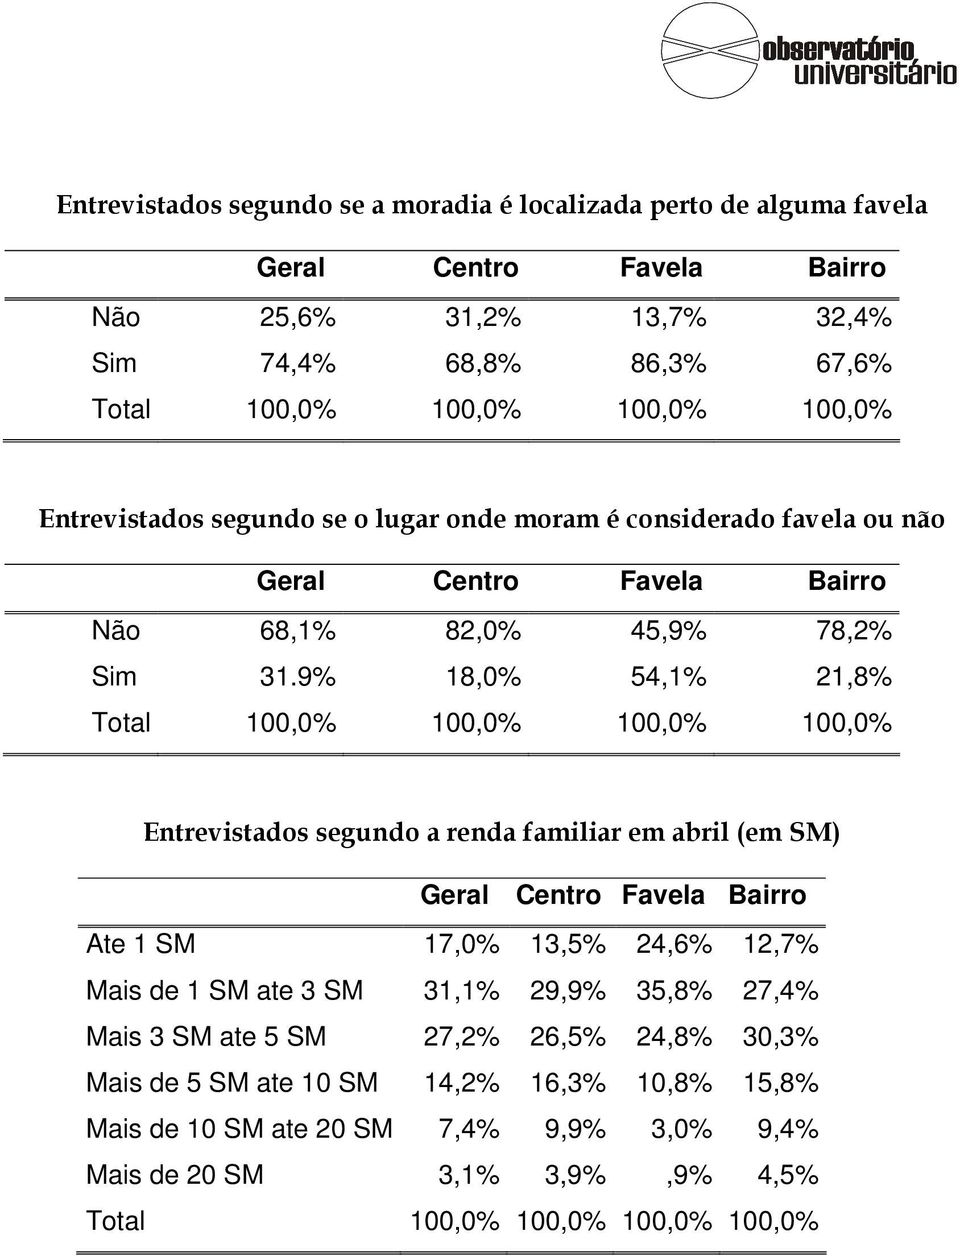 9% 18,0% 54,1% 21,8% 100,0% 100,0% Entrevistados segundo a renda familiar em abril (em SM) Geral Centro Favela Bairro Ate 1 SM 17,0% 13,5% 24,6% 12,7% Mais de 1 SM ate 3